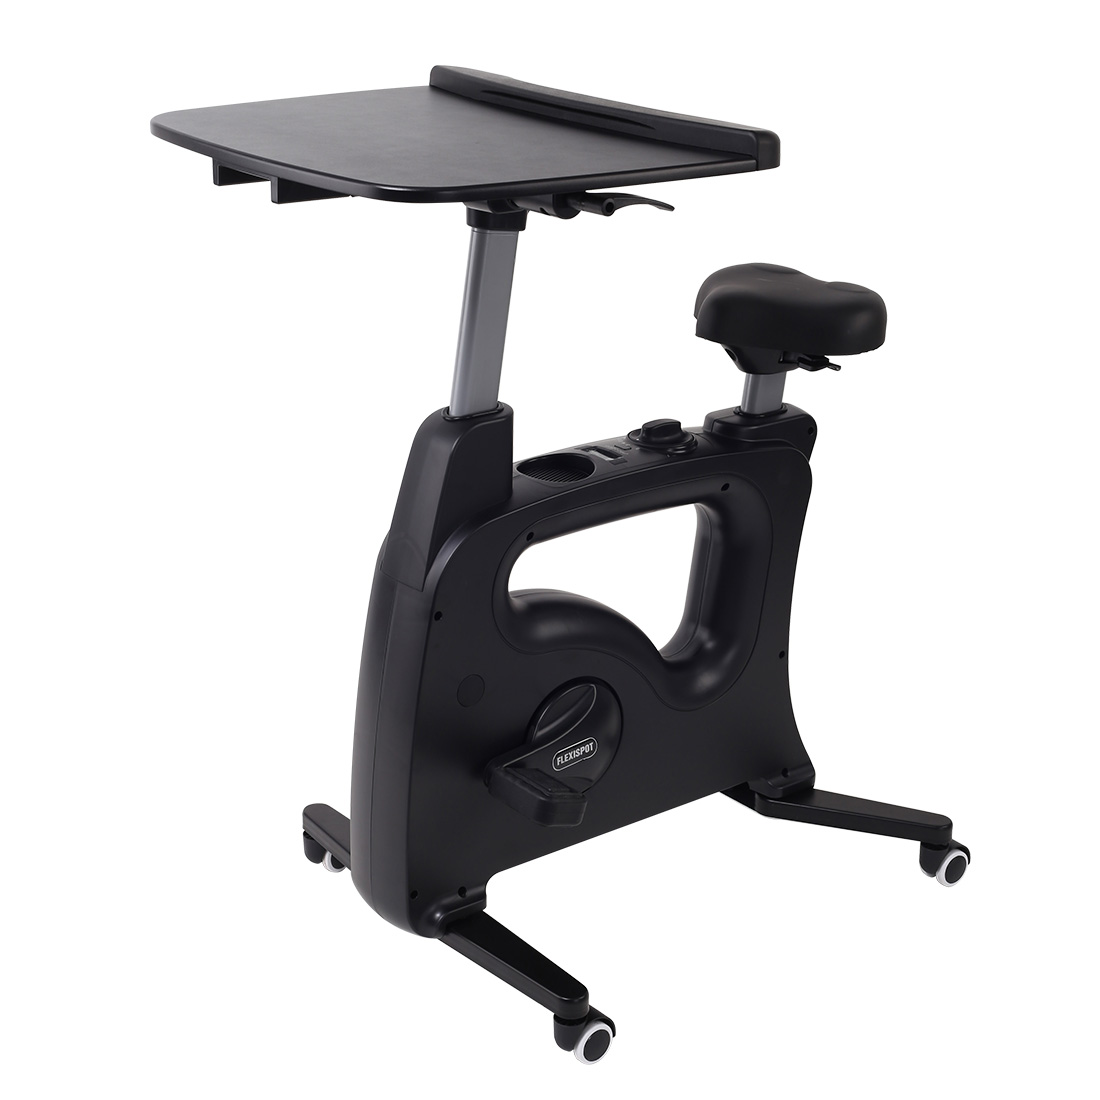 Flexispot Deskcise Pro V9 AllinOne Ergonomic Exercise Desk Bike